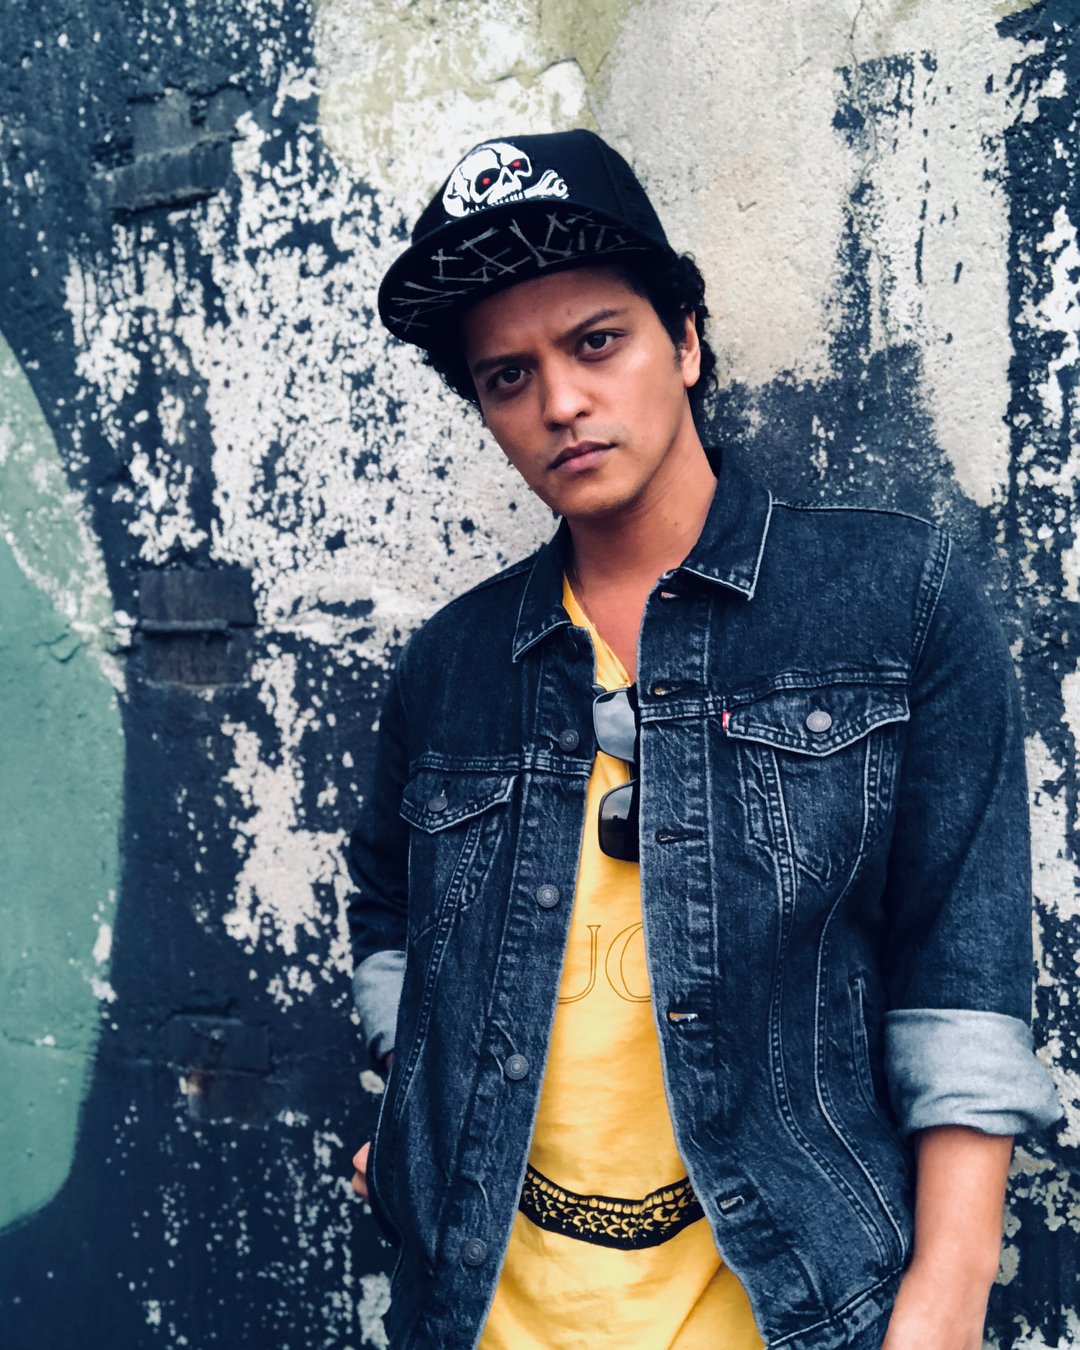 Bruno Mars posando para foto em frente de muro com grafite.